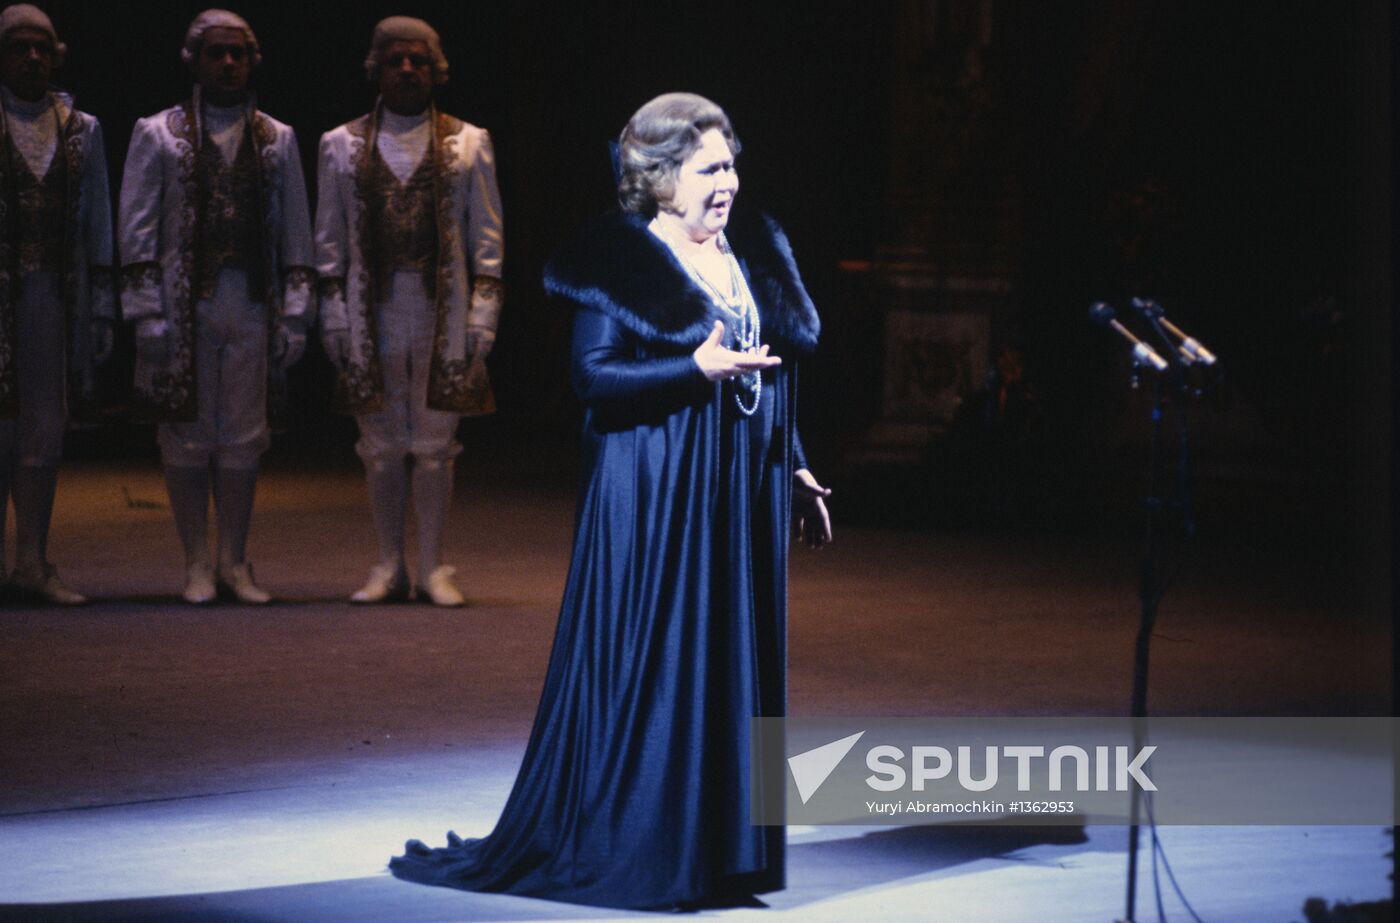 Opera singer Irina Arkhipova